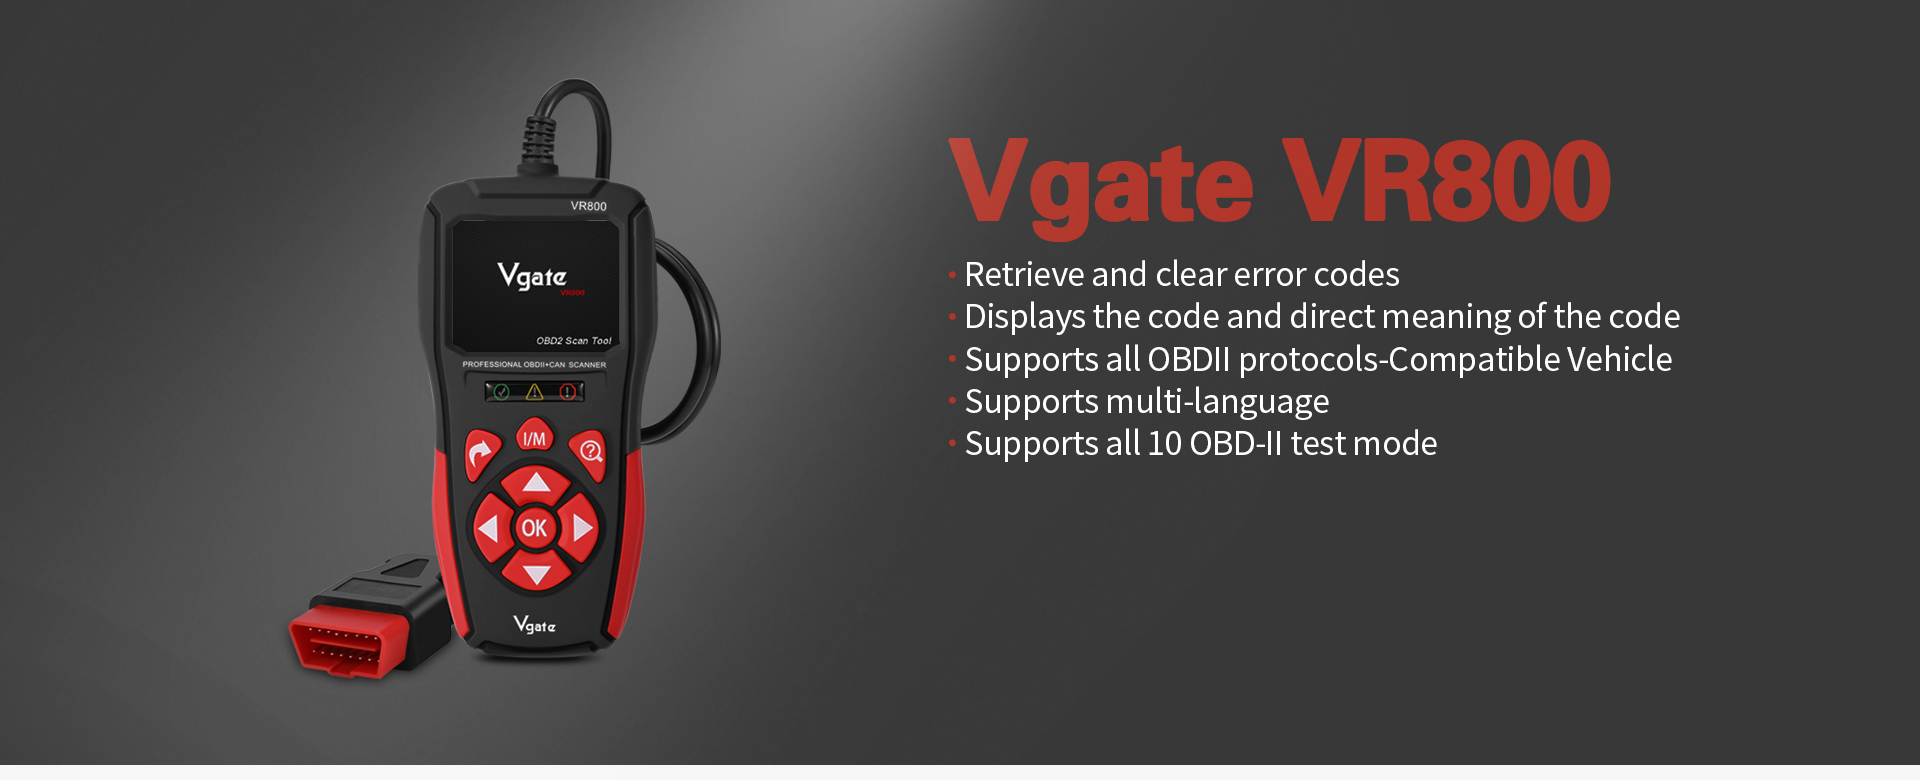 Vgate VR800